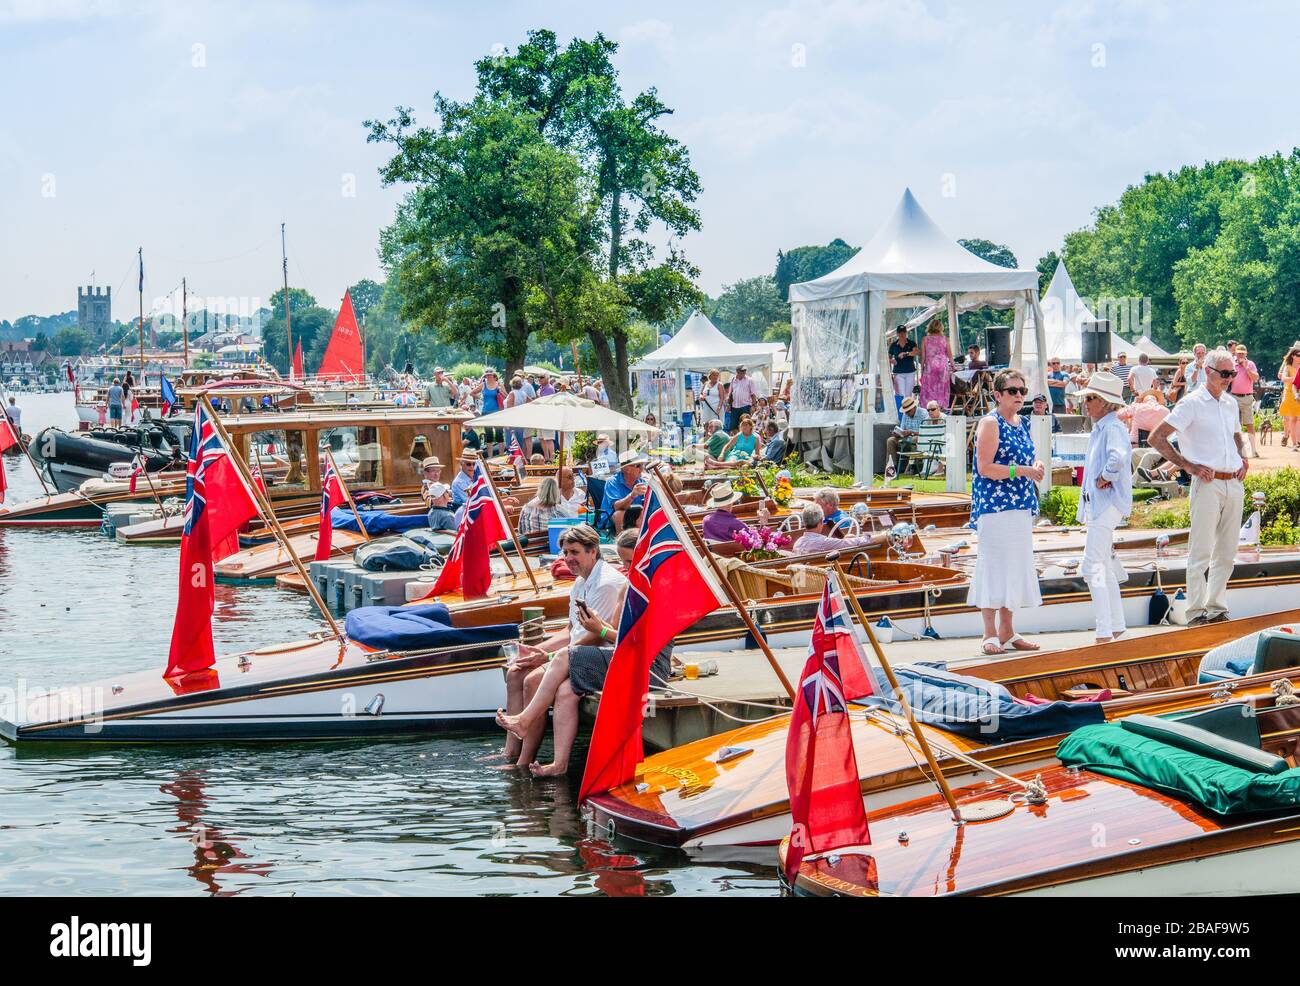 Une journée d'été en anglais - ciel bleu, bateaux, drapeaux rouges et personnes appréciant le rallye traditionnel de bateau sur la Tamise, Henley-on-Thames. 2018. Banque D'Images